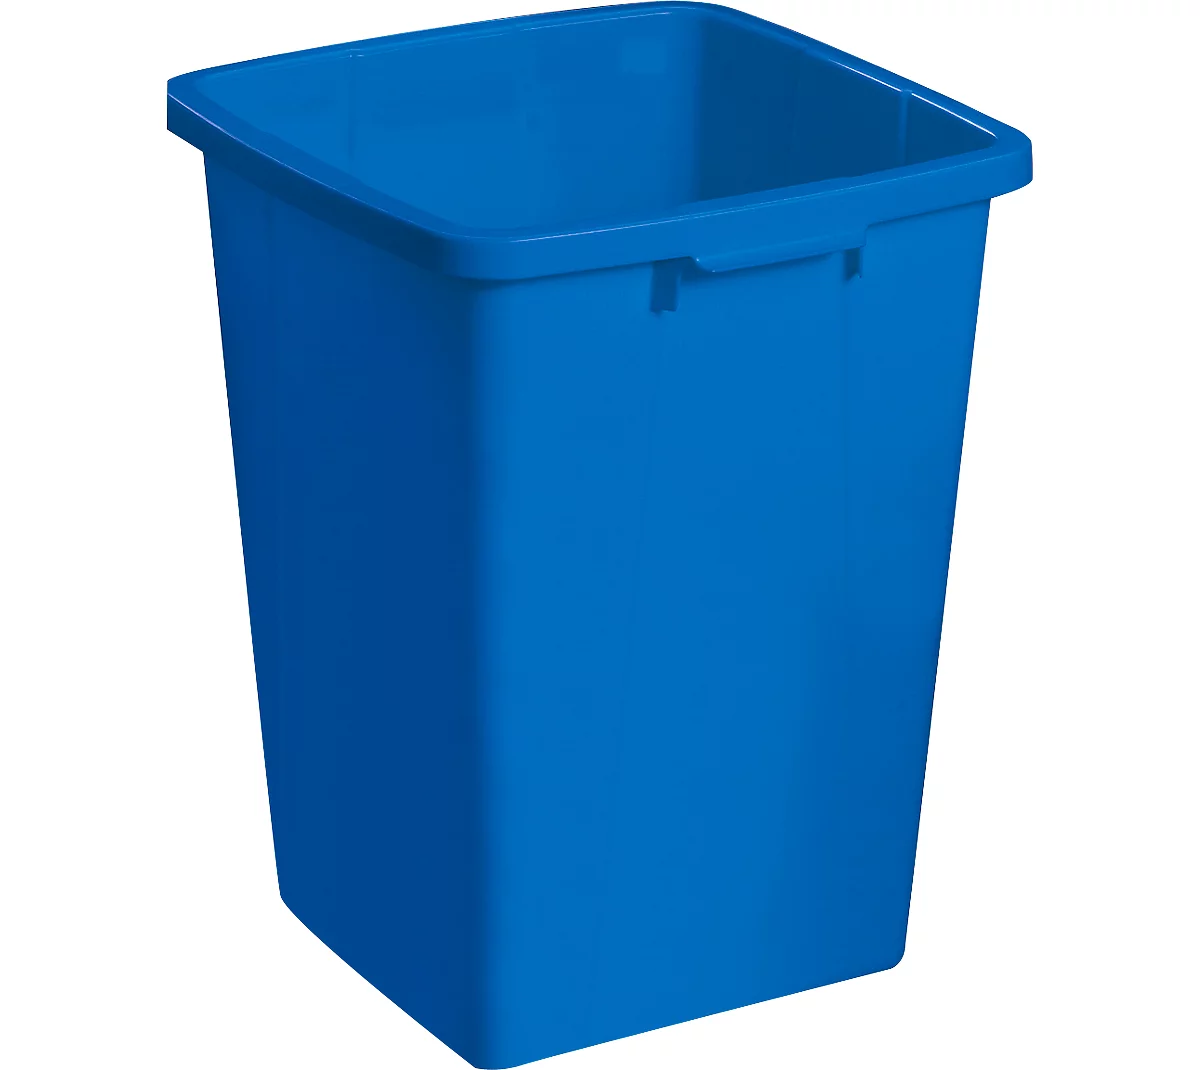 Cubo de basura sin tapa, 90 l, azul